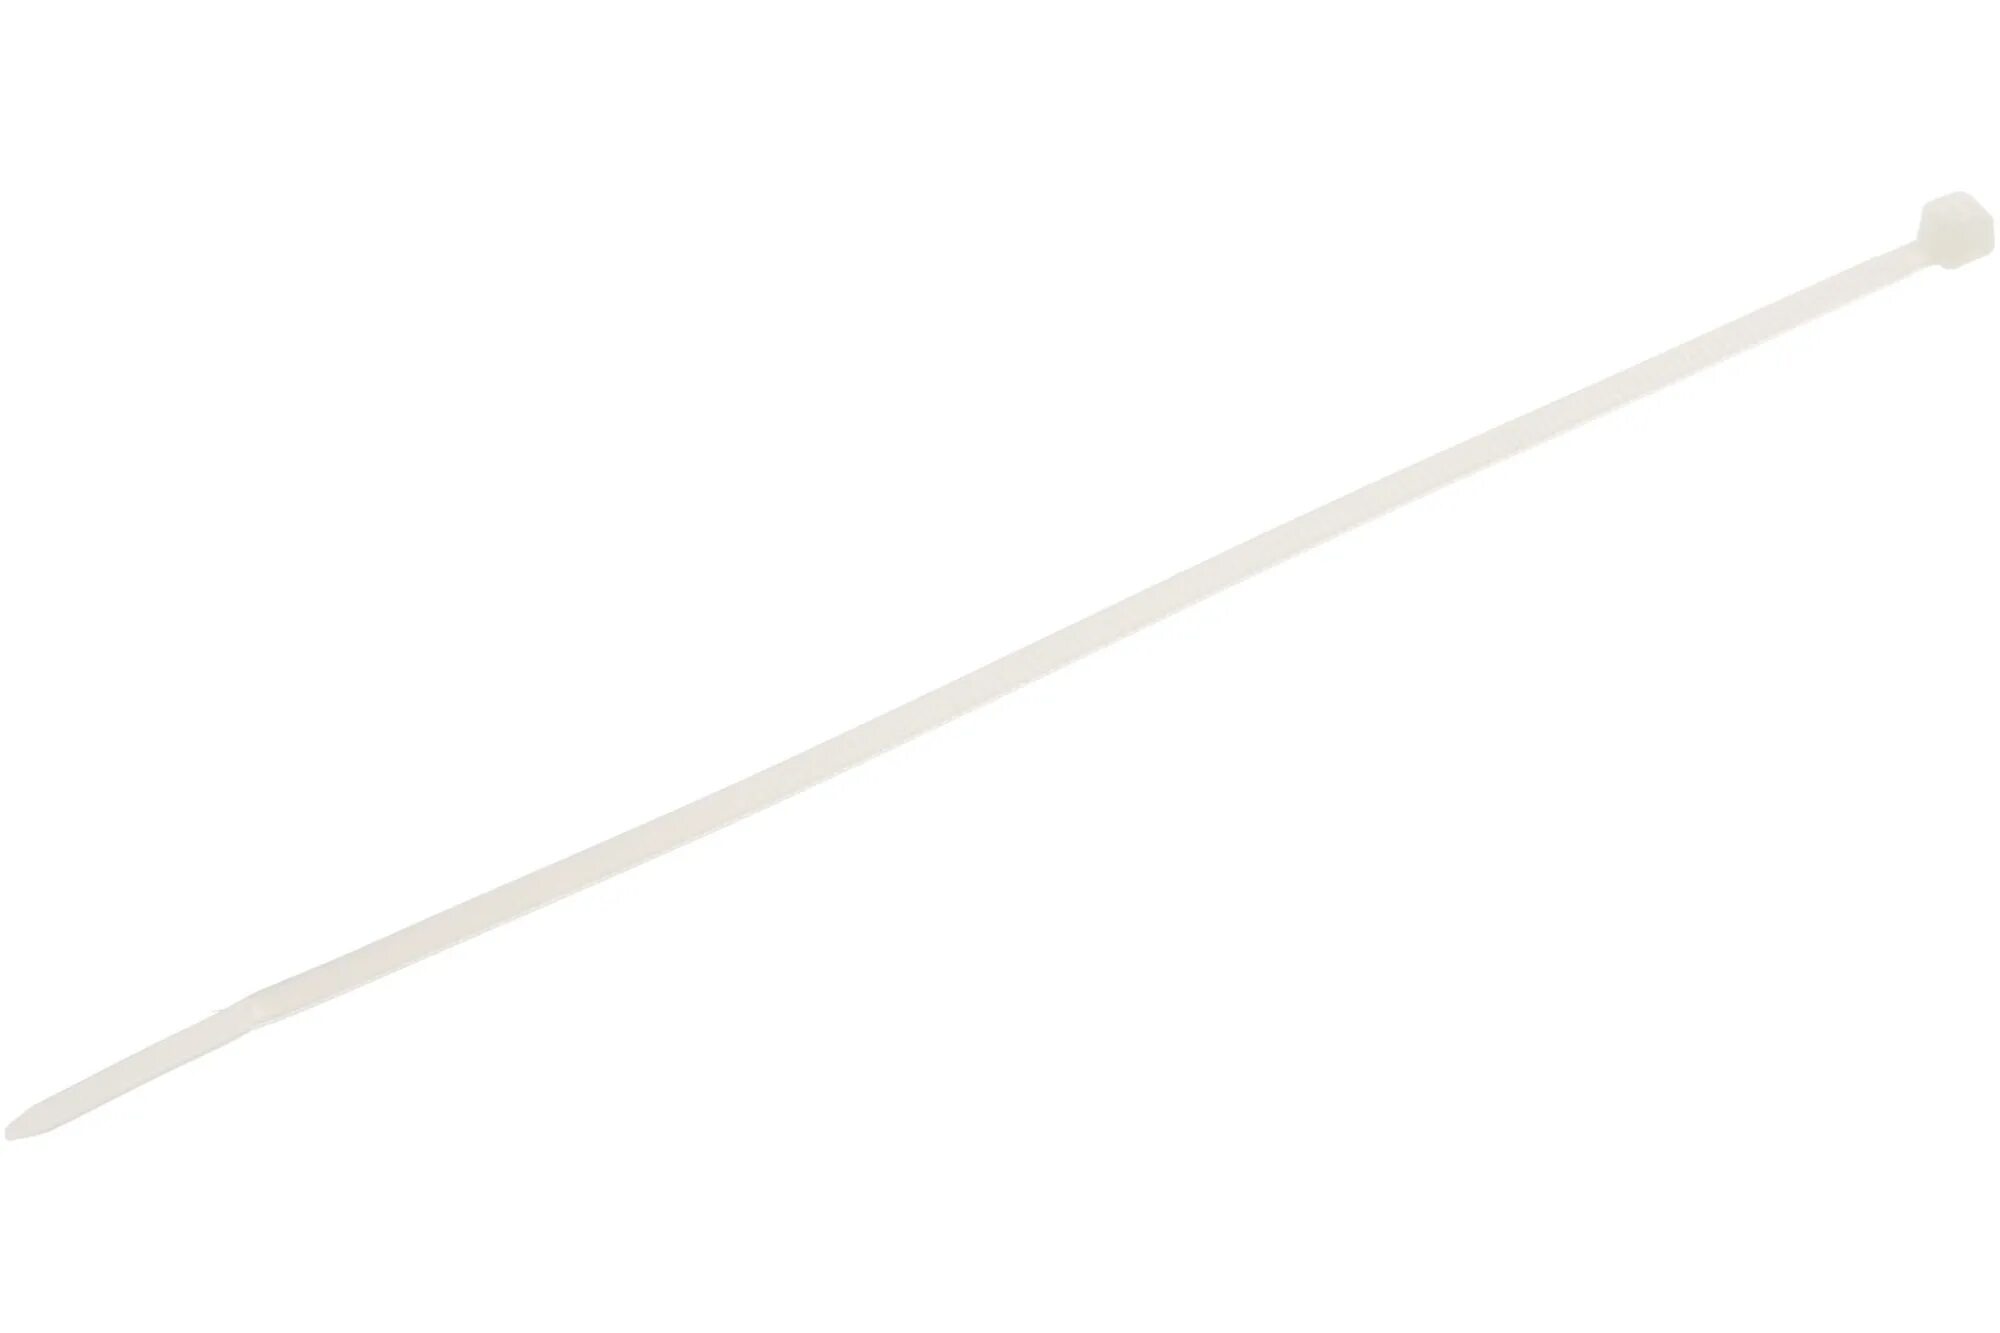 200 36 10. Хомуты кабельные Lit 3,6х200 мм цвет белый. Стяжки белые.